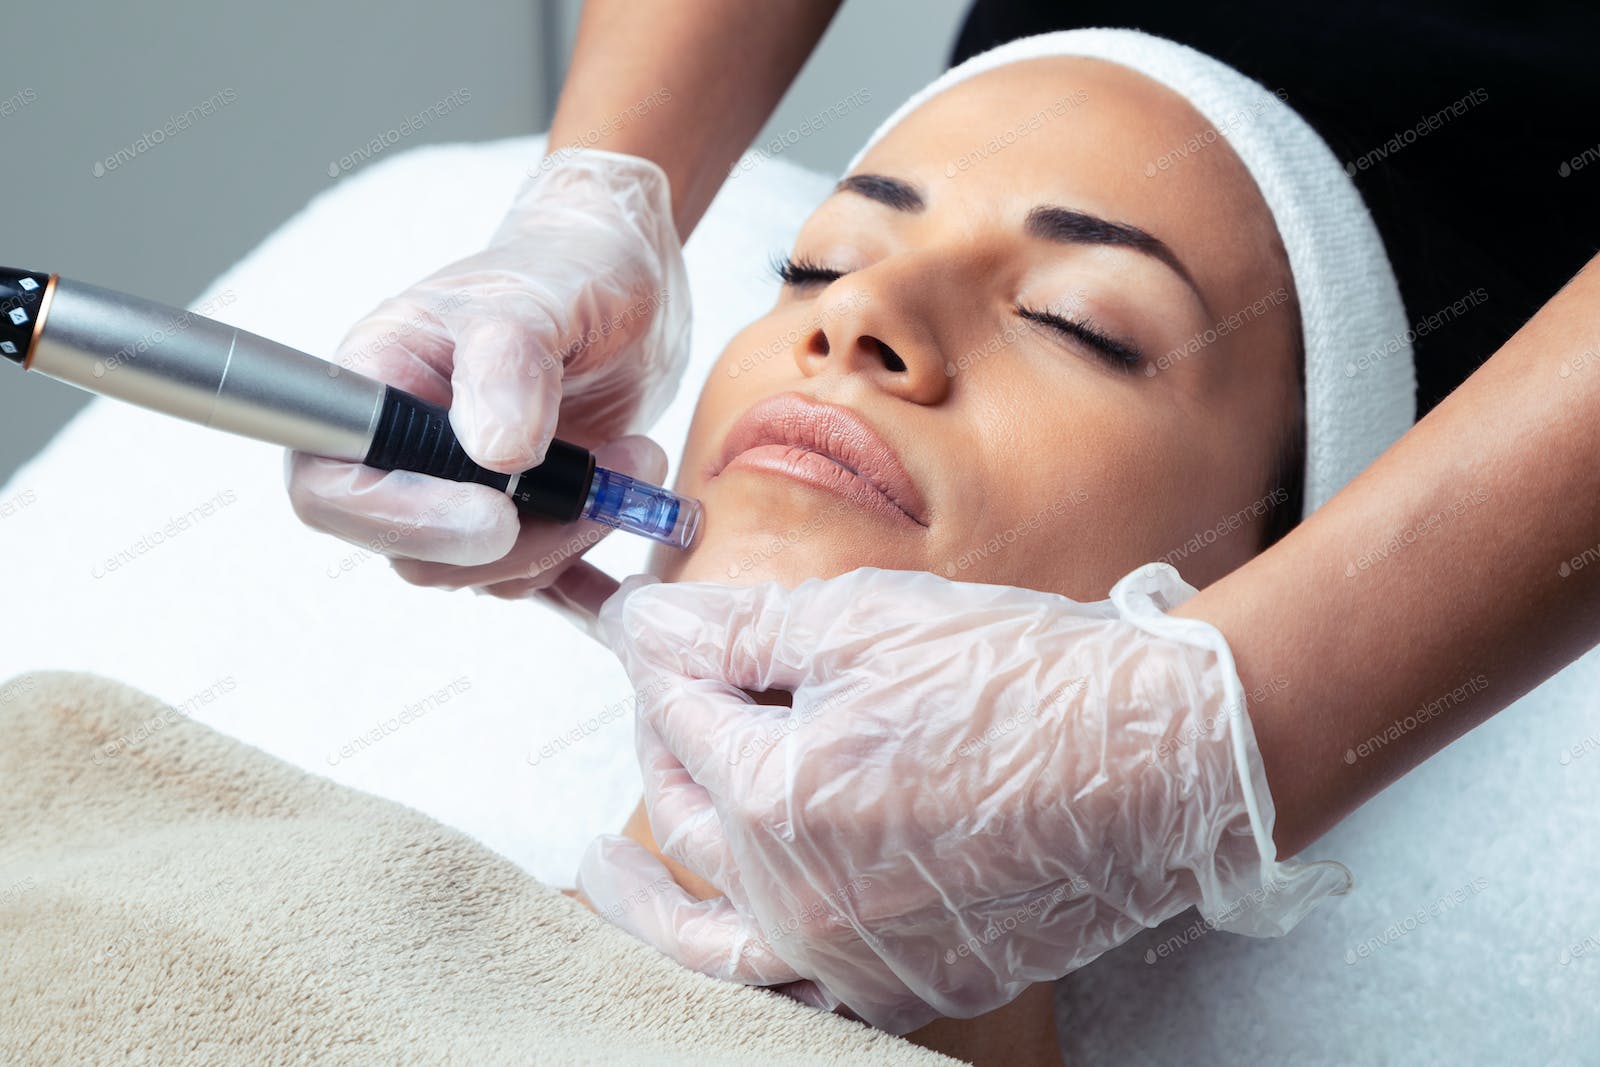 Фракционная мезотерапия кожи лица – эффективность тысячи уколов красоты!